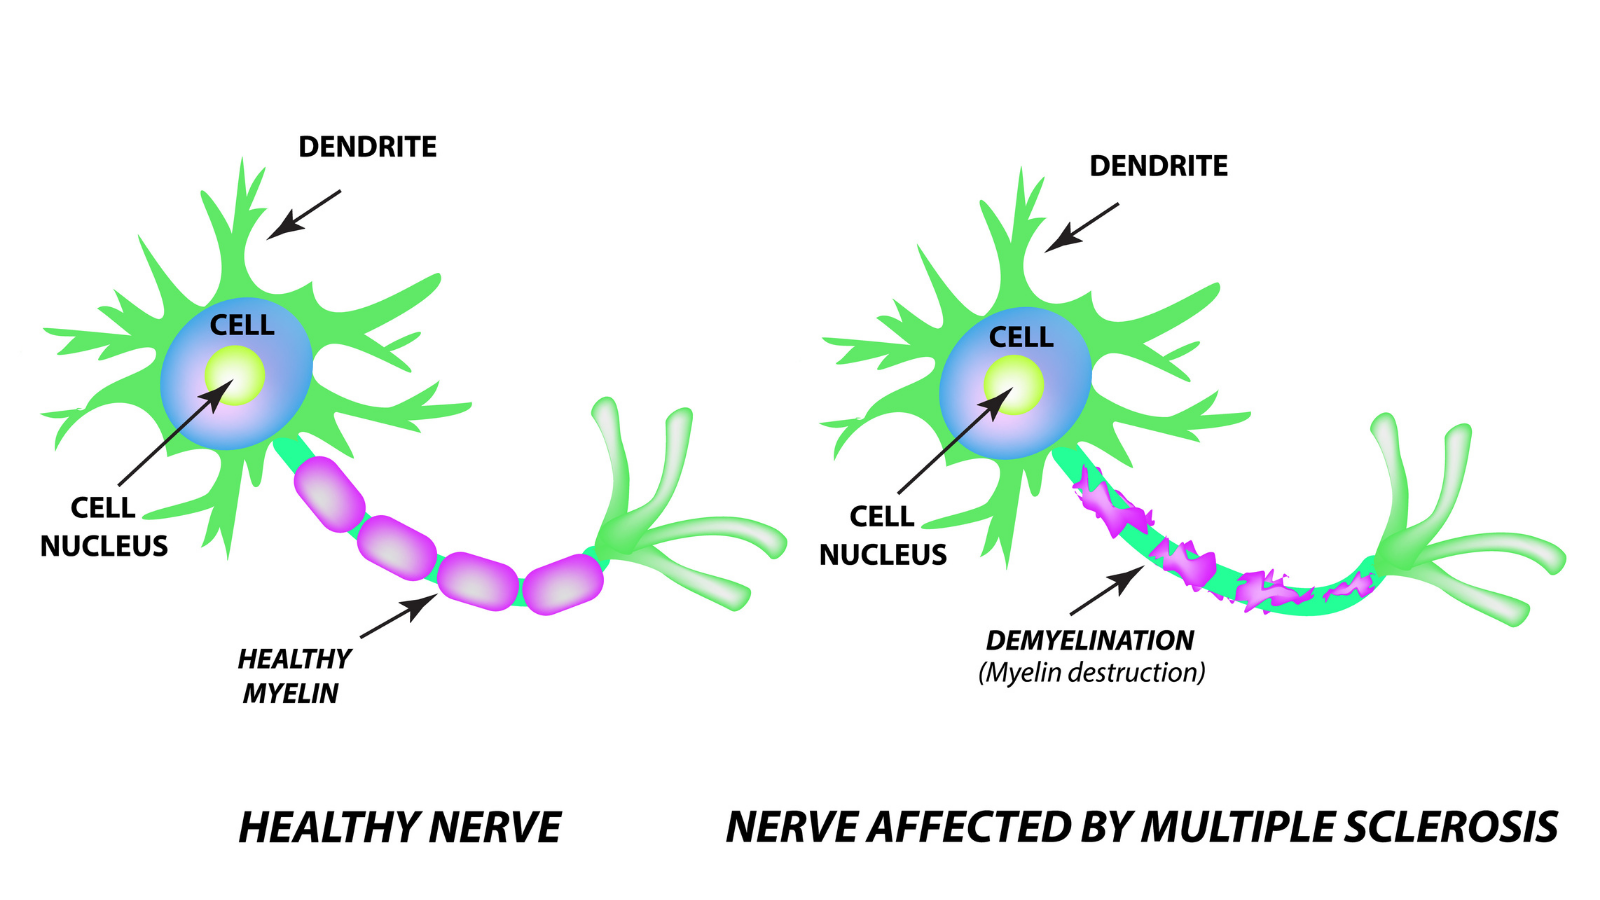 The destruction of the myelin sheath on the axon